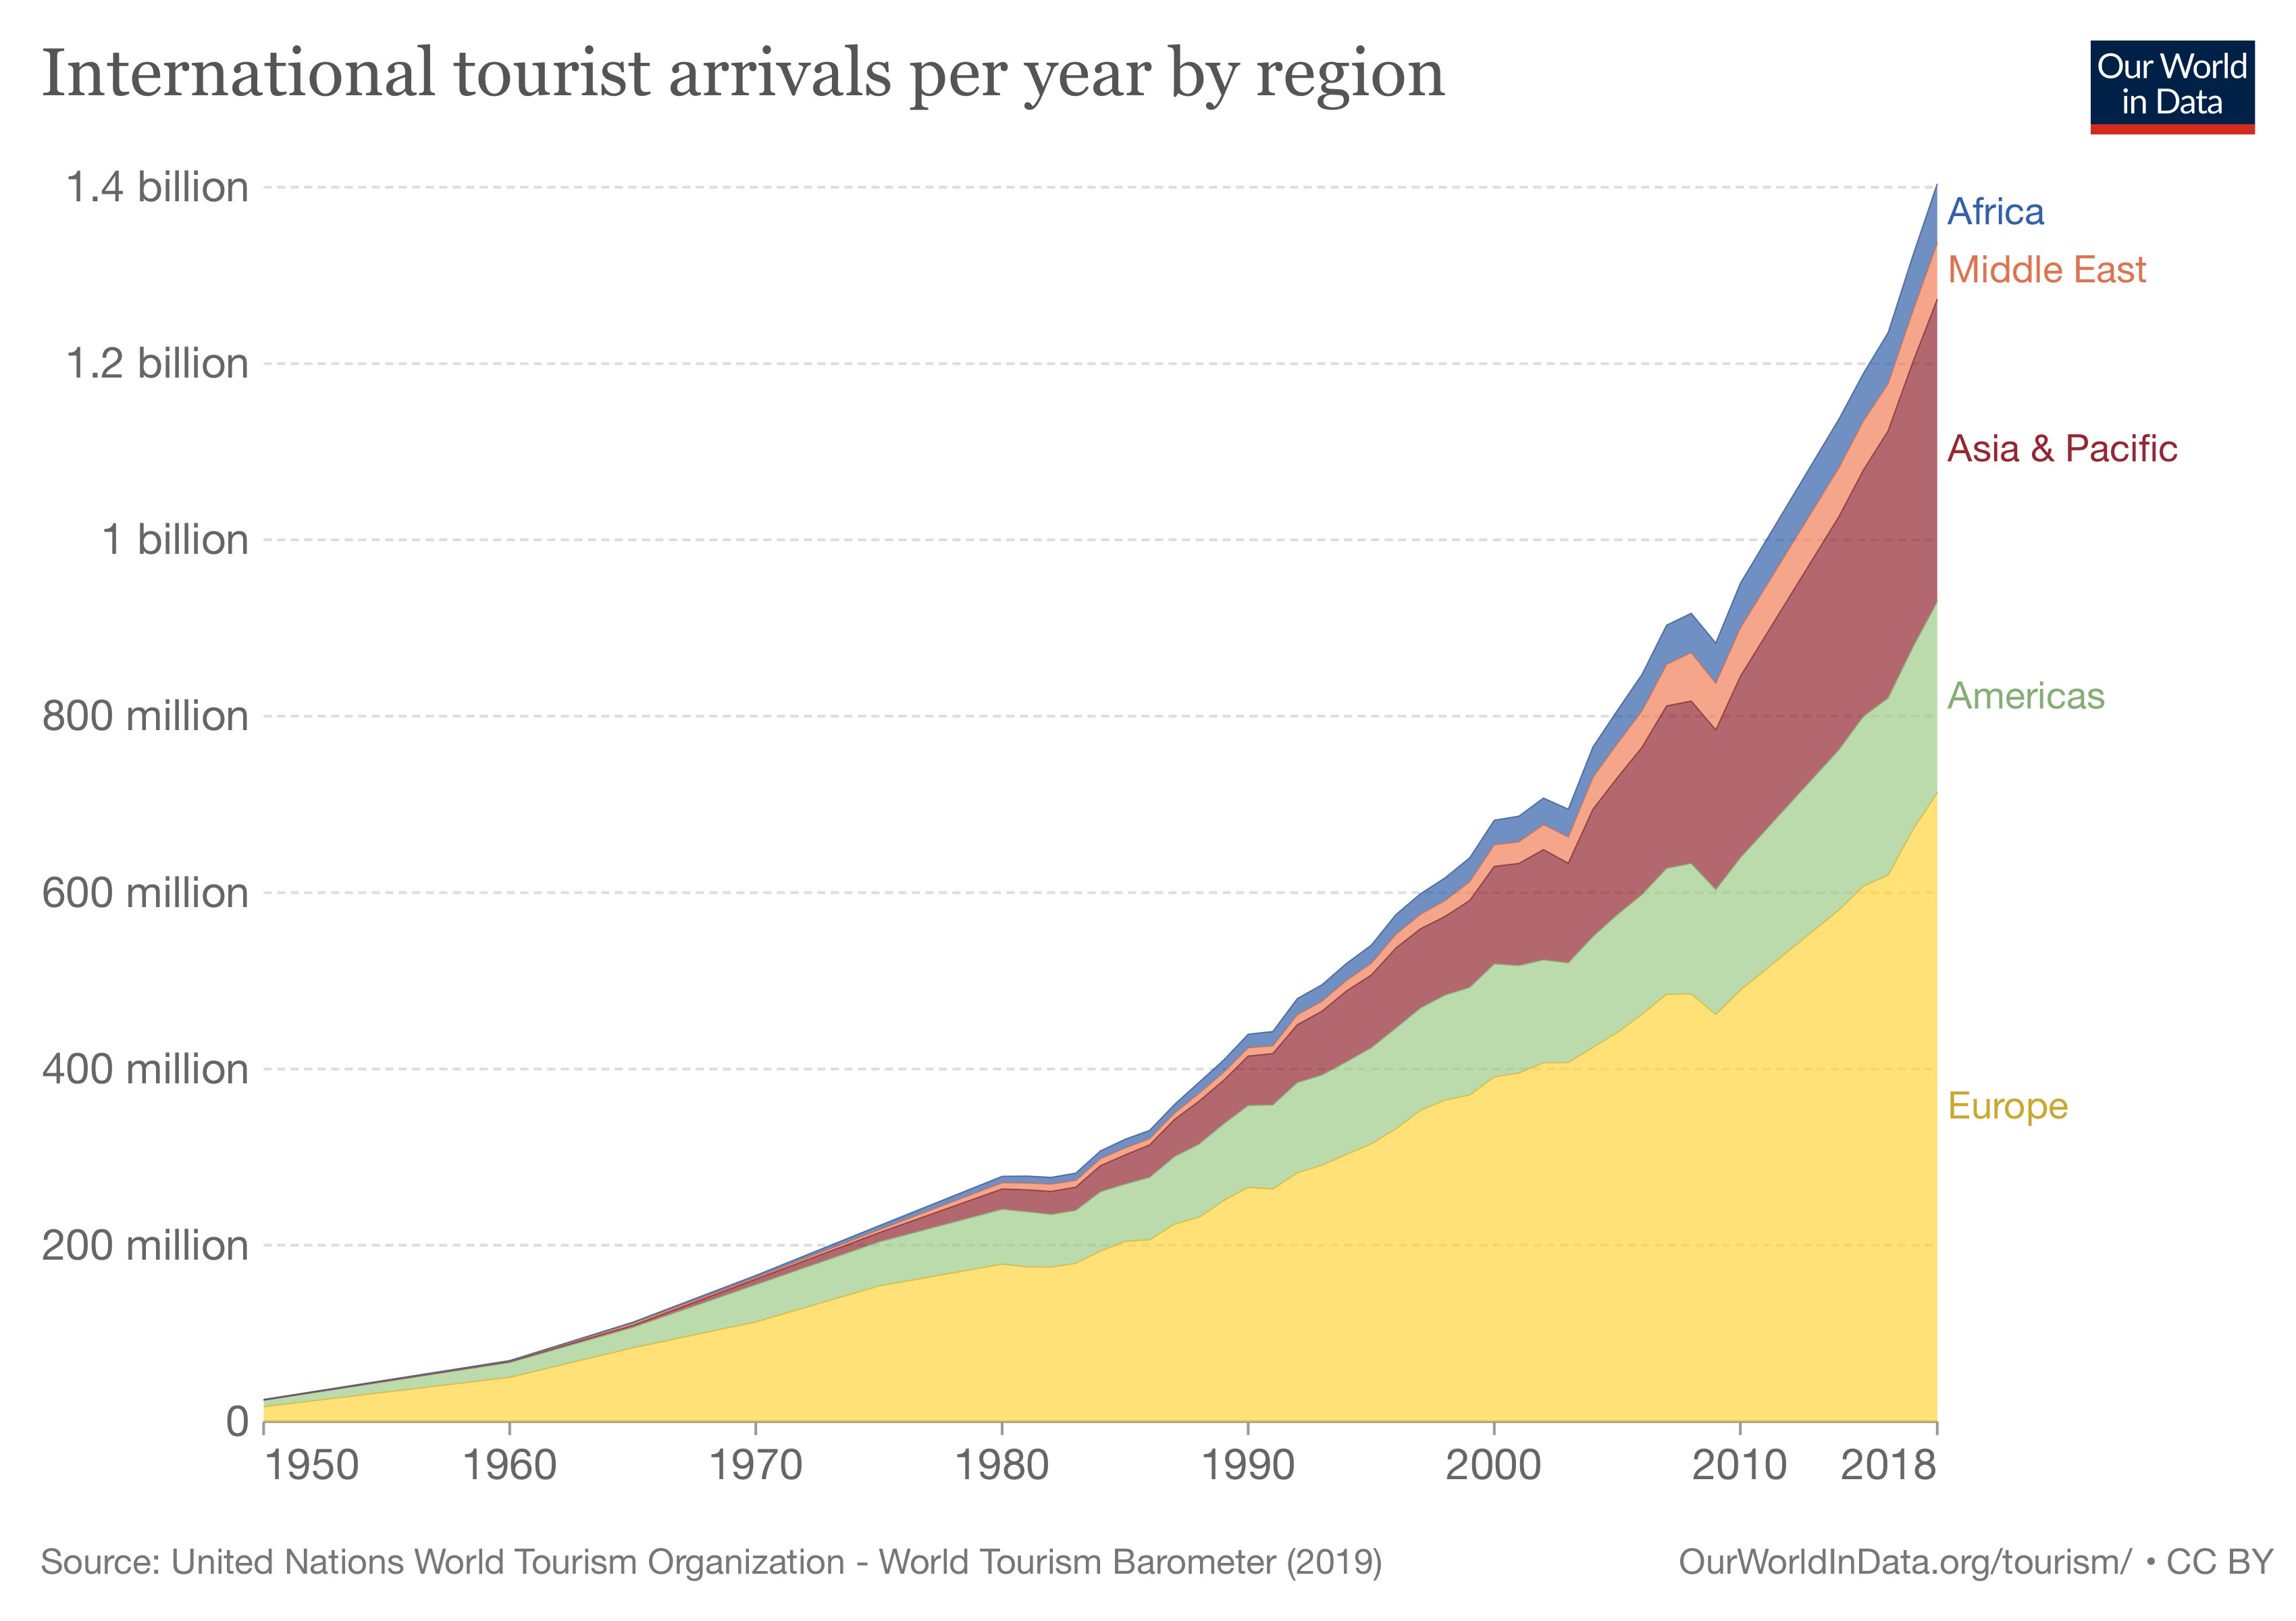 International Tourist Arrivals by Region